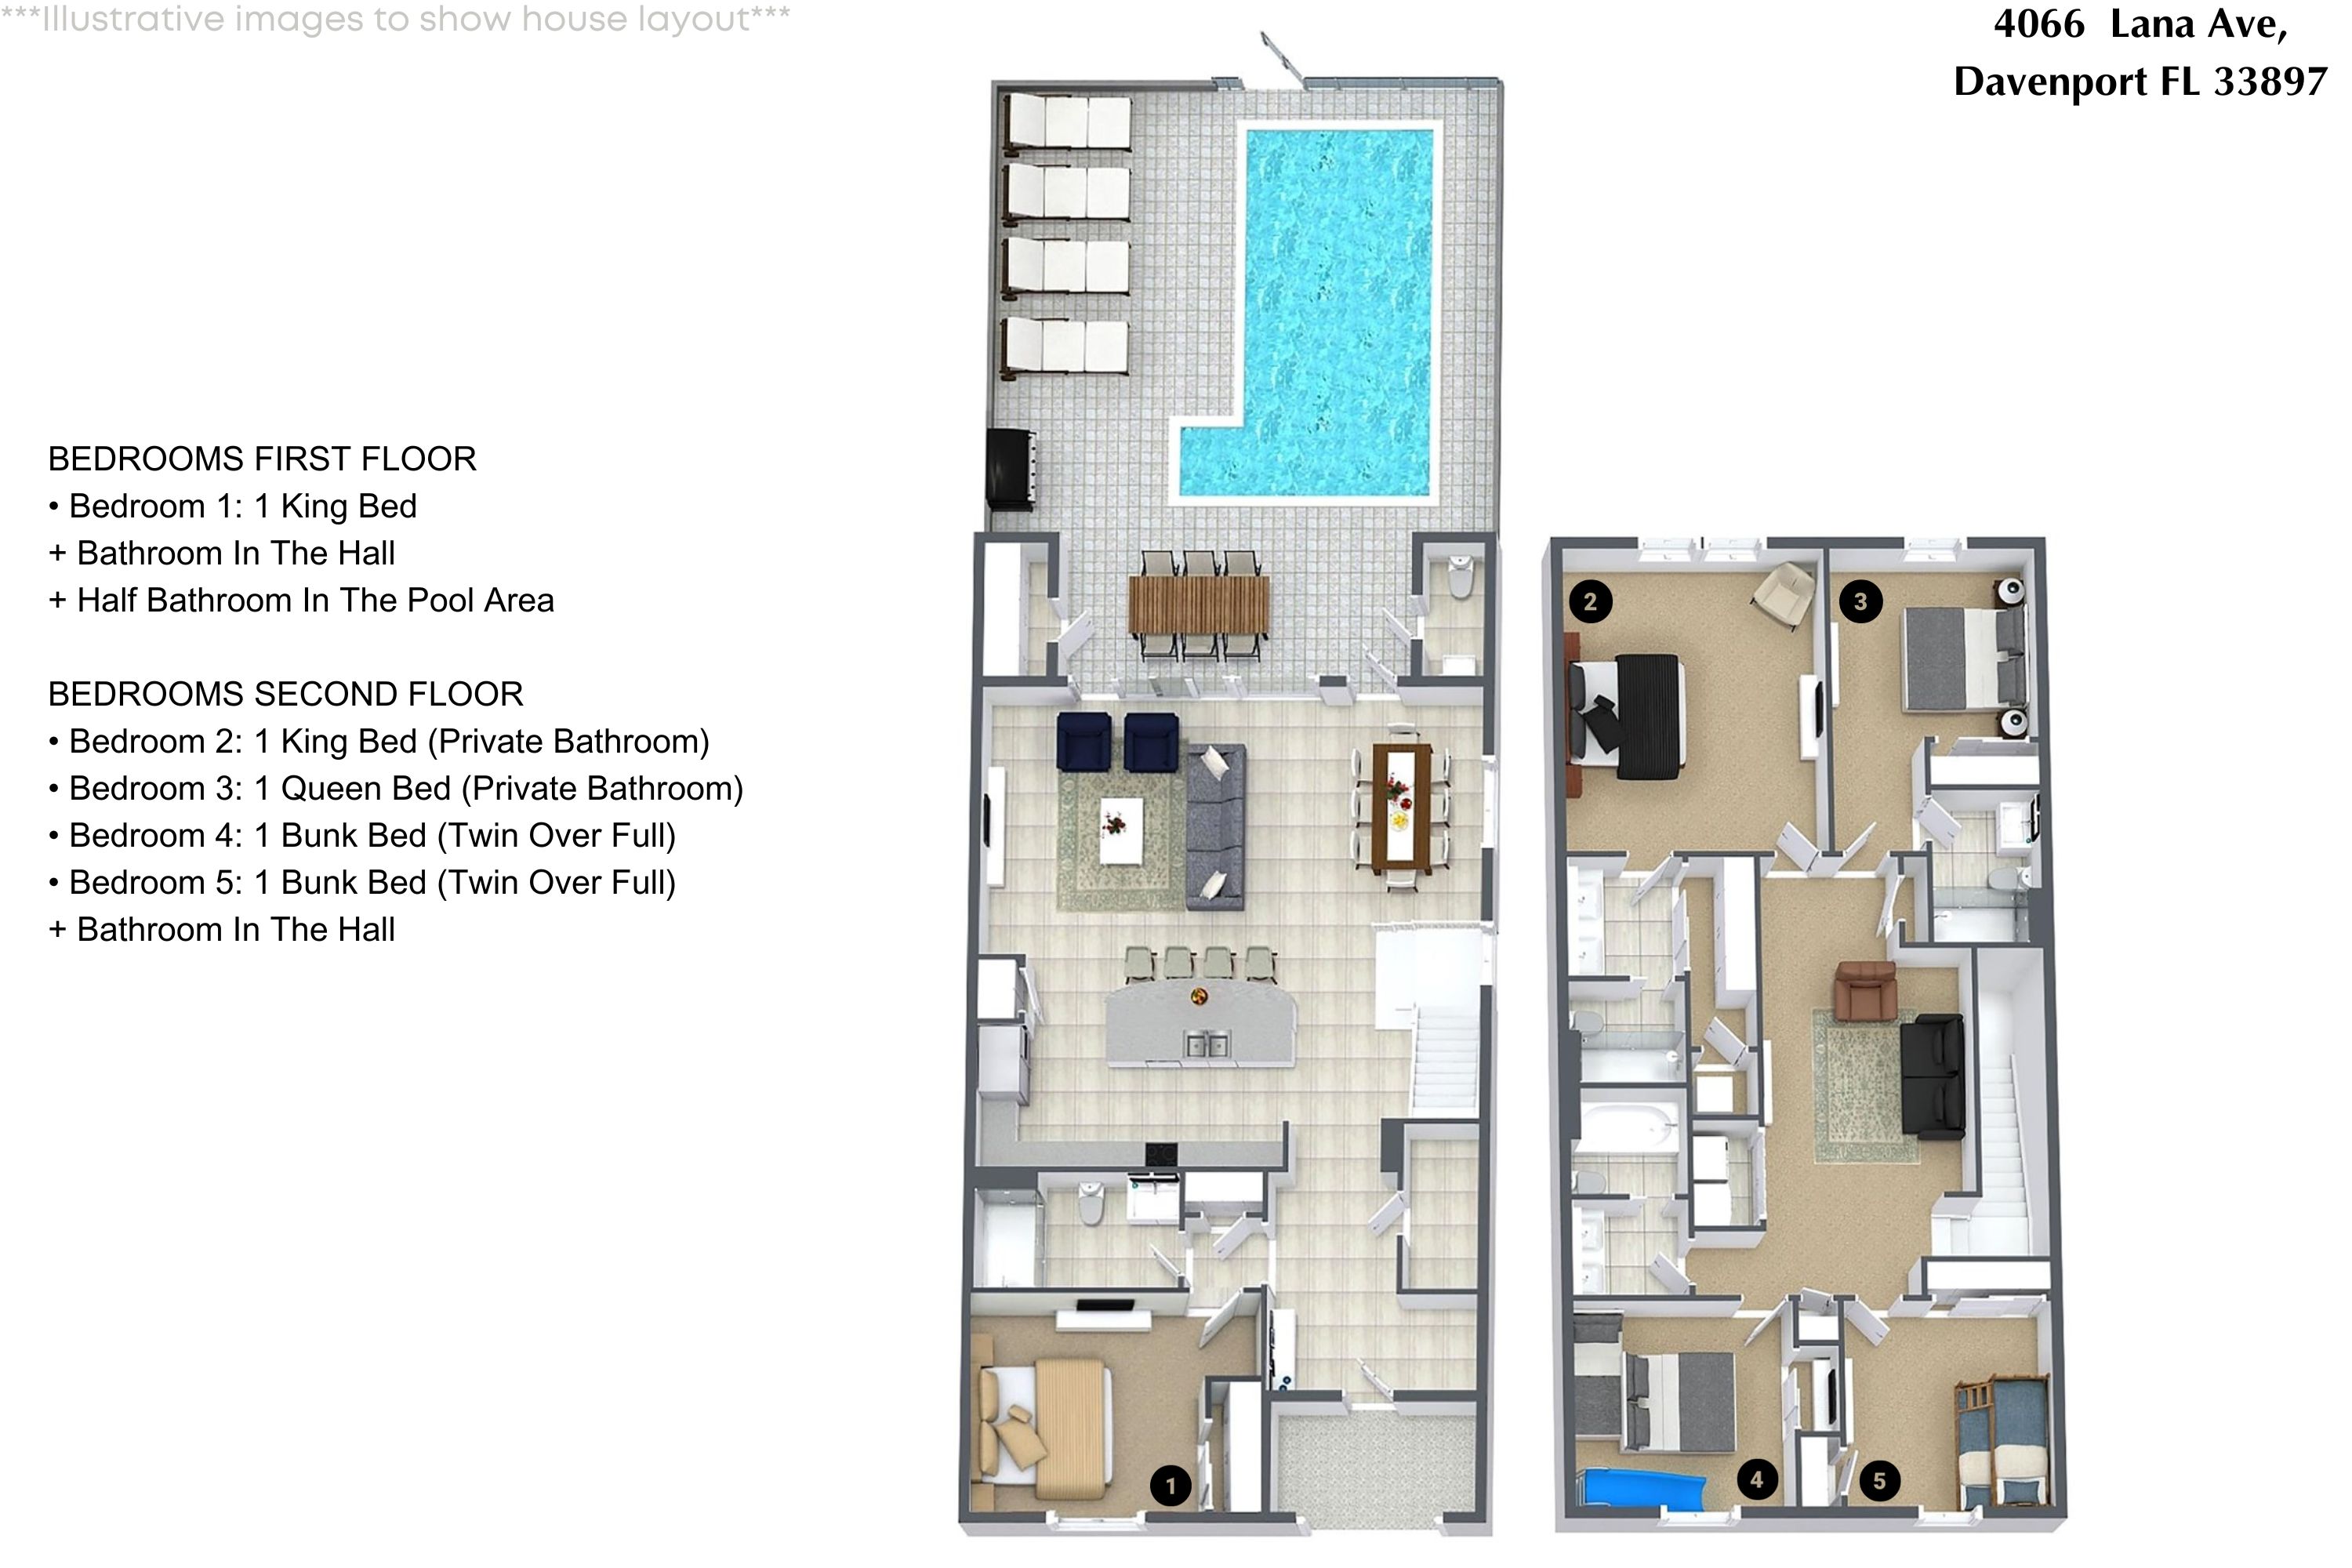 Property Image 2 - 5 Bedrooms/ 4.5 Baths/ Windsor Island (4066 LA)